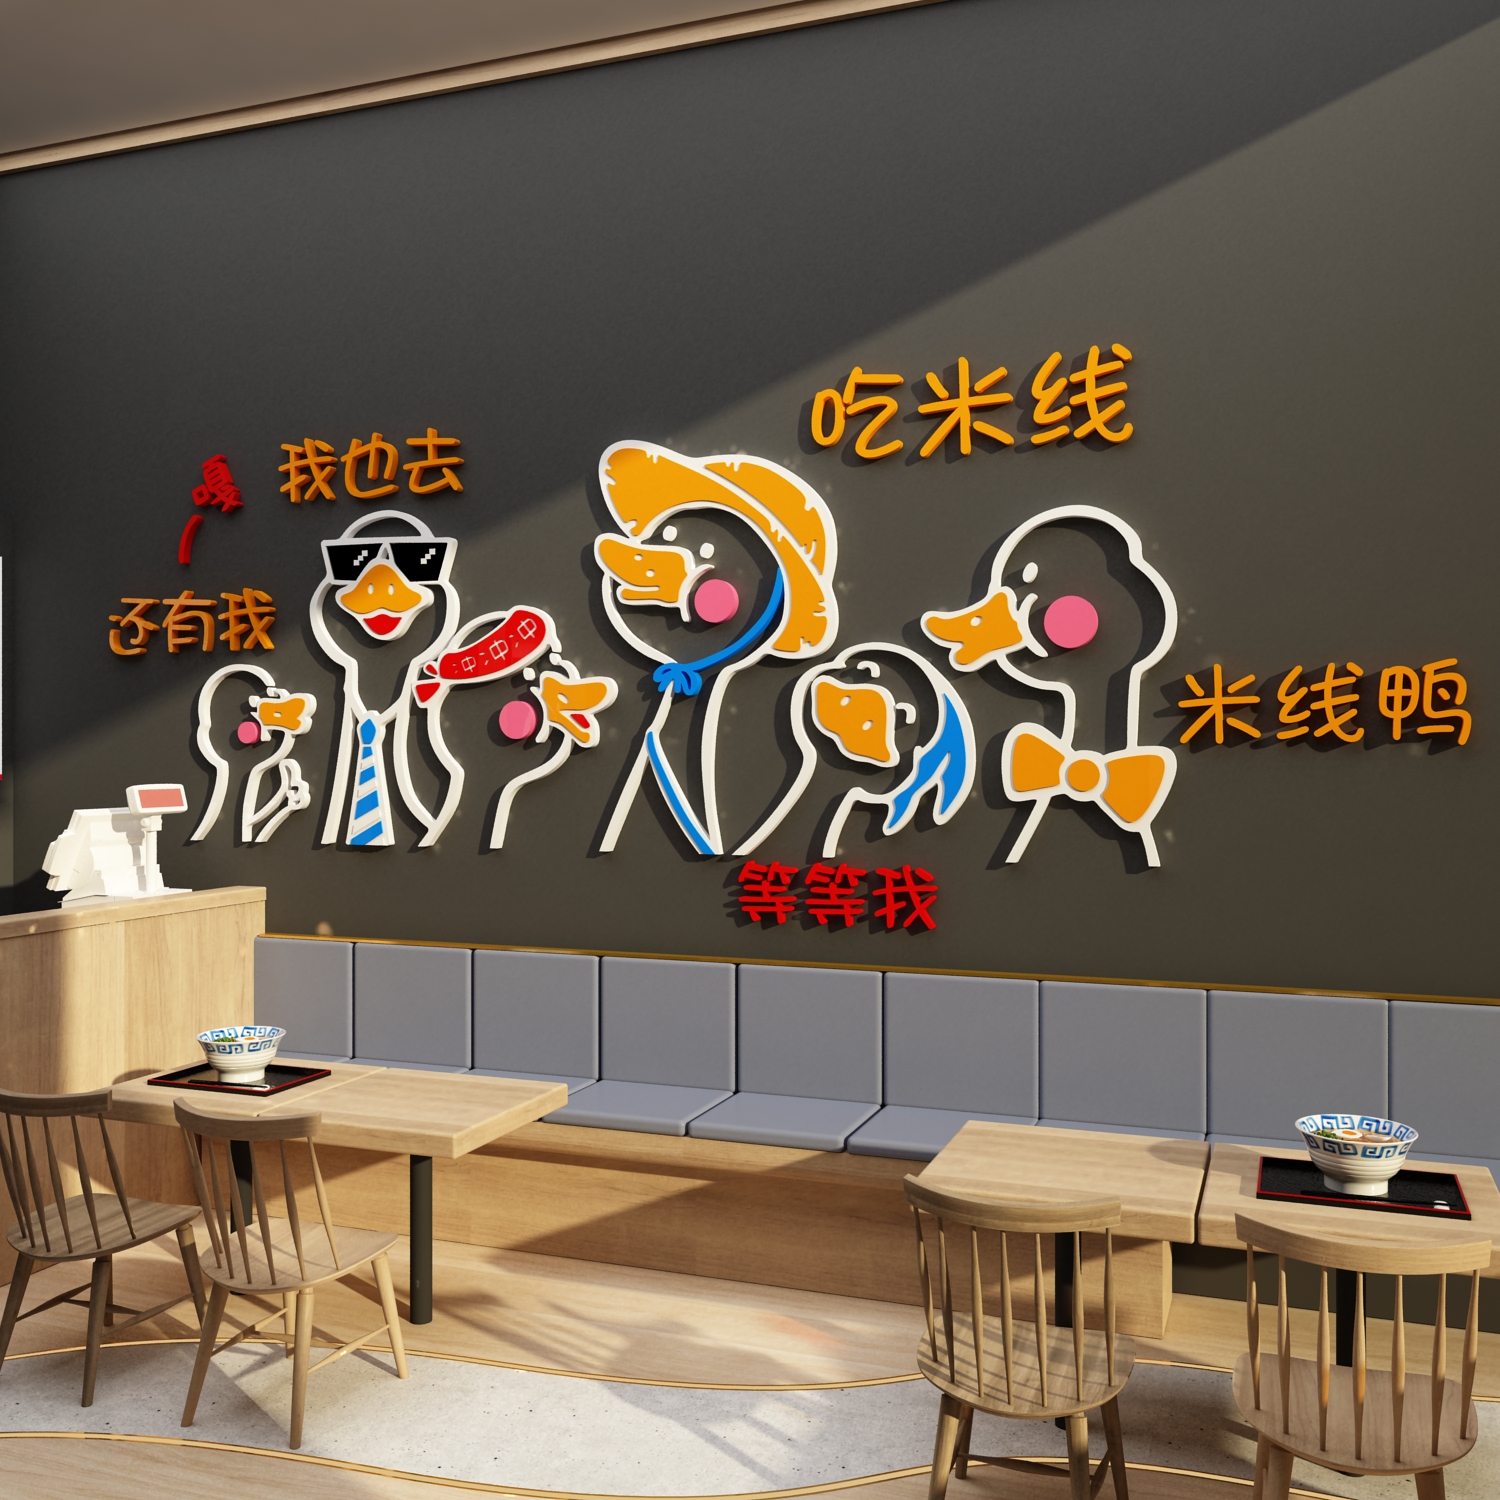 网红米线饭店装饰品墙面早餐厅饮小吃广告贴纸画凉皮麻辣烫馆布置